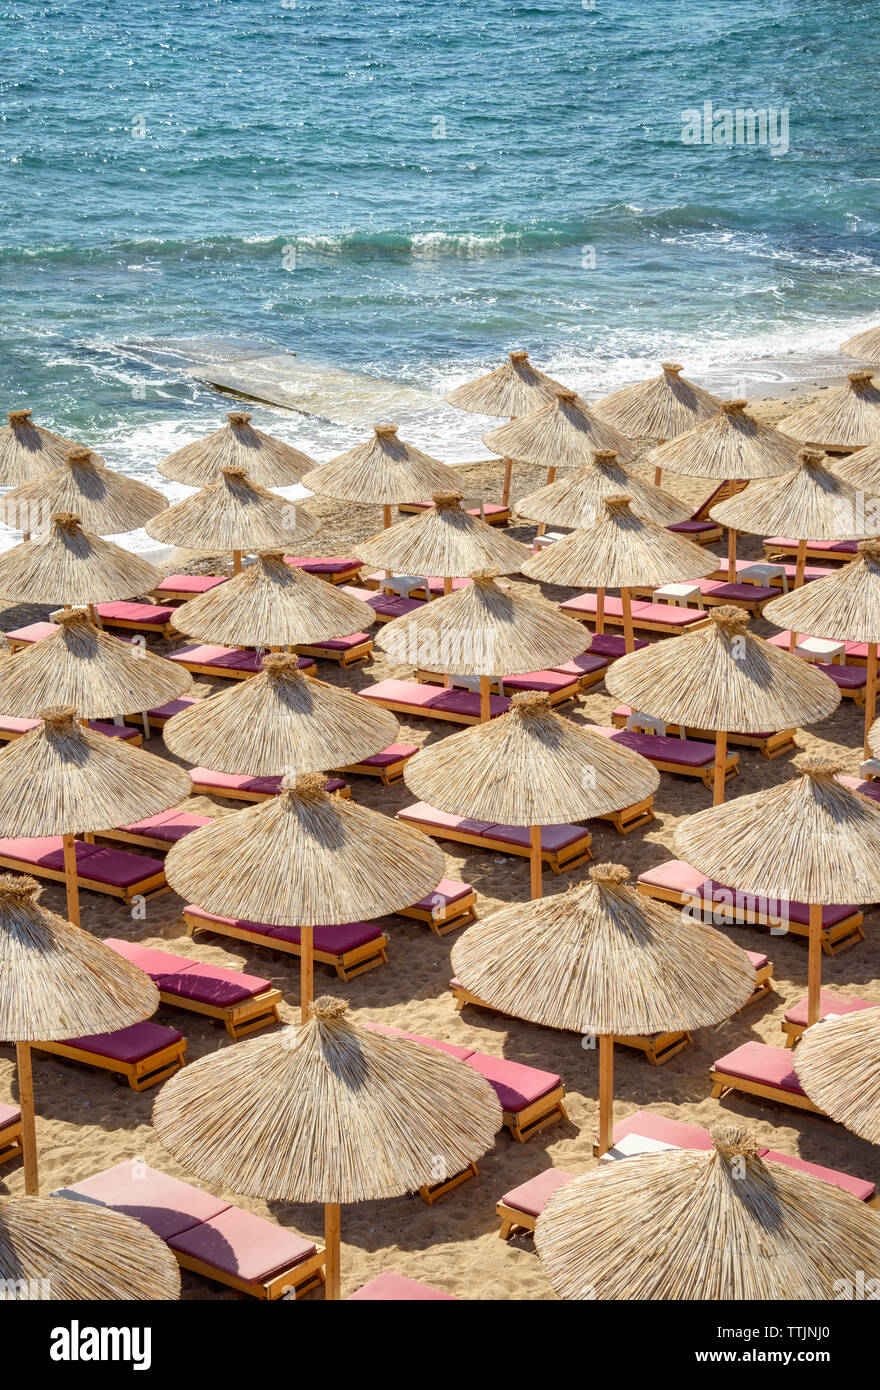 Viele Schilf Stroh Sonnenschirme mit Liegen auf einem schönen Sandstrand an der Adria Küste, eine Antenne top Aussicht am Strand an einem sonnigen Tag Stockfoto